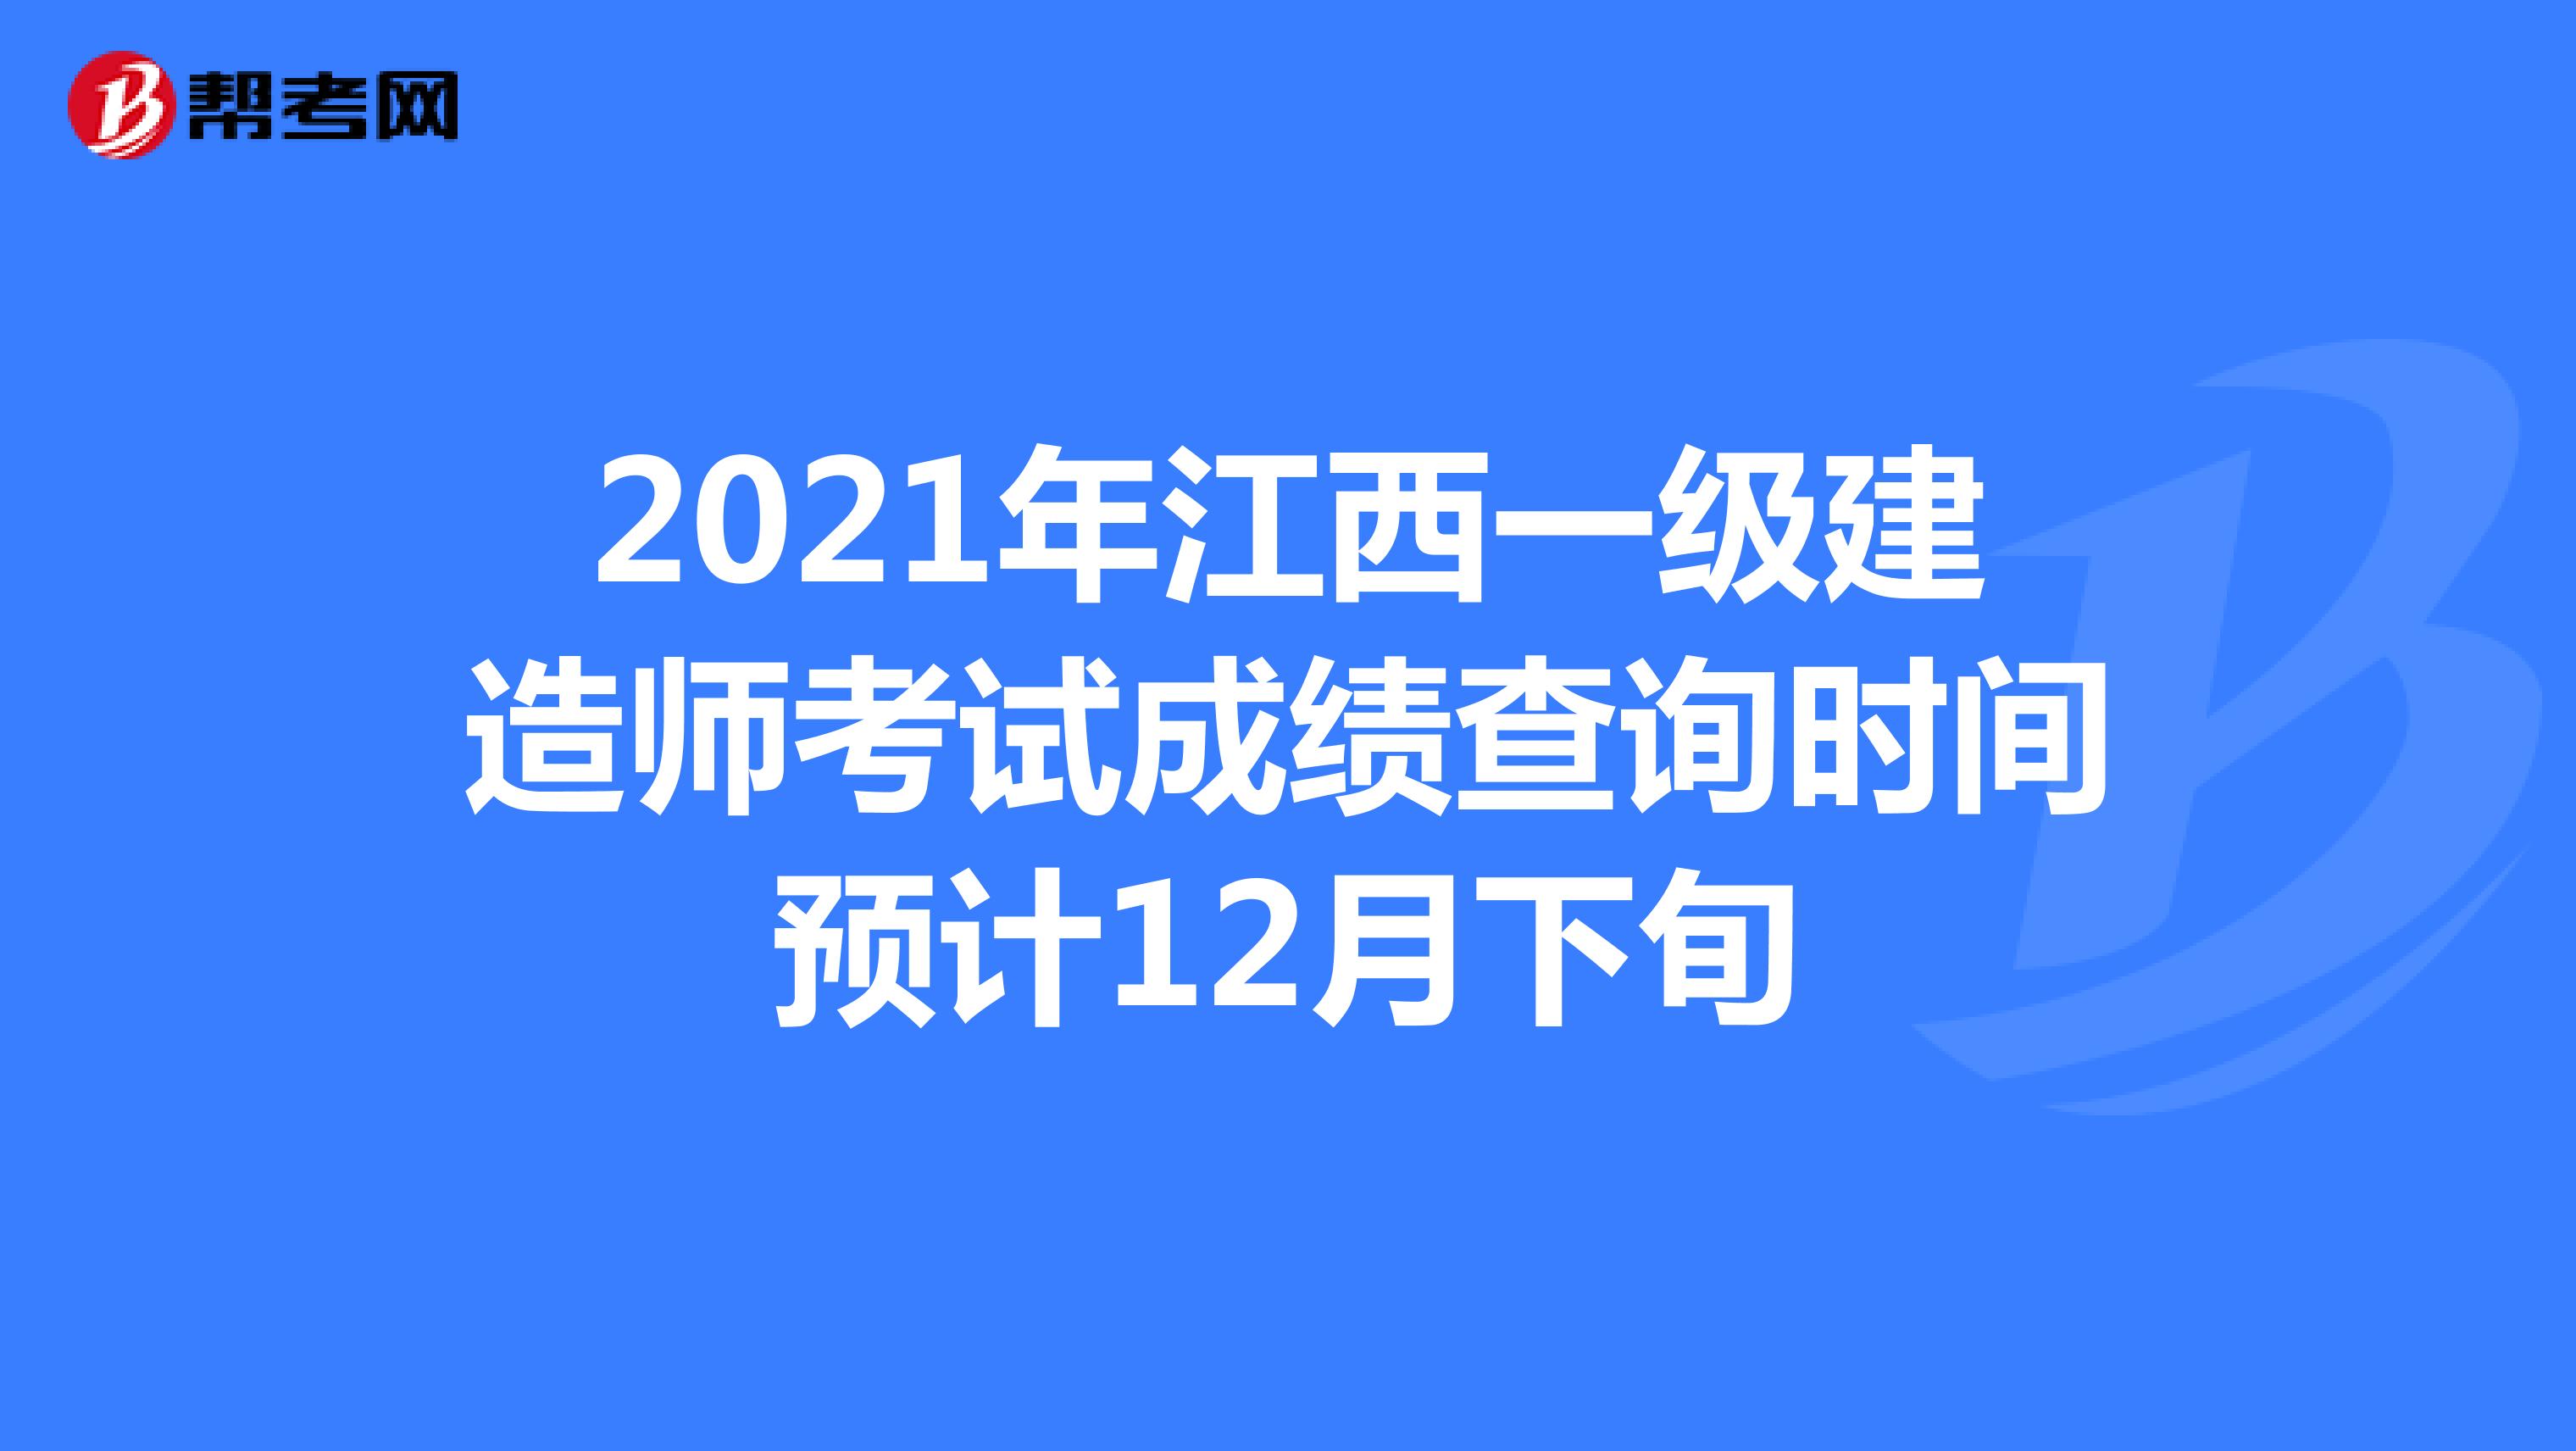 2021年江西一级建造师考试成绩查询时间预计12月下旬